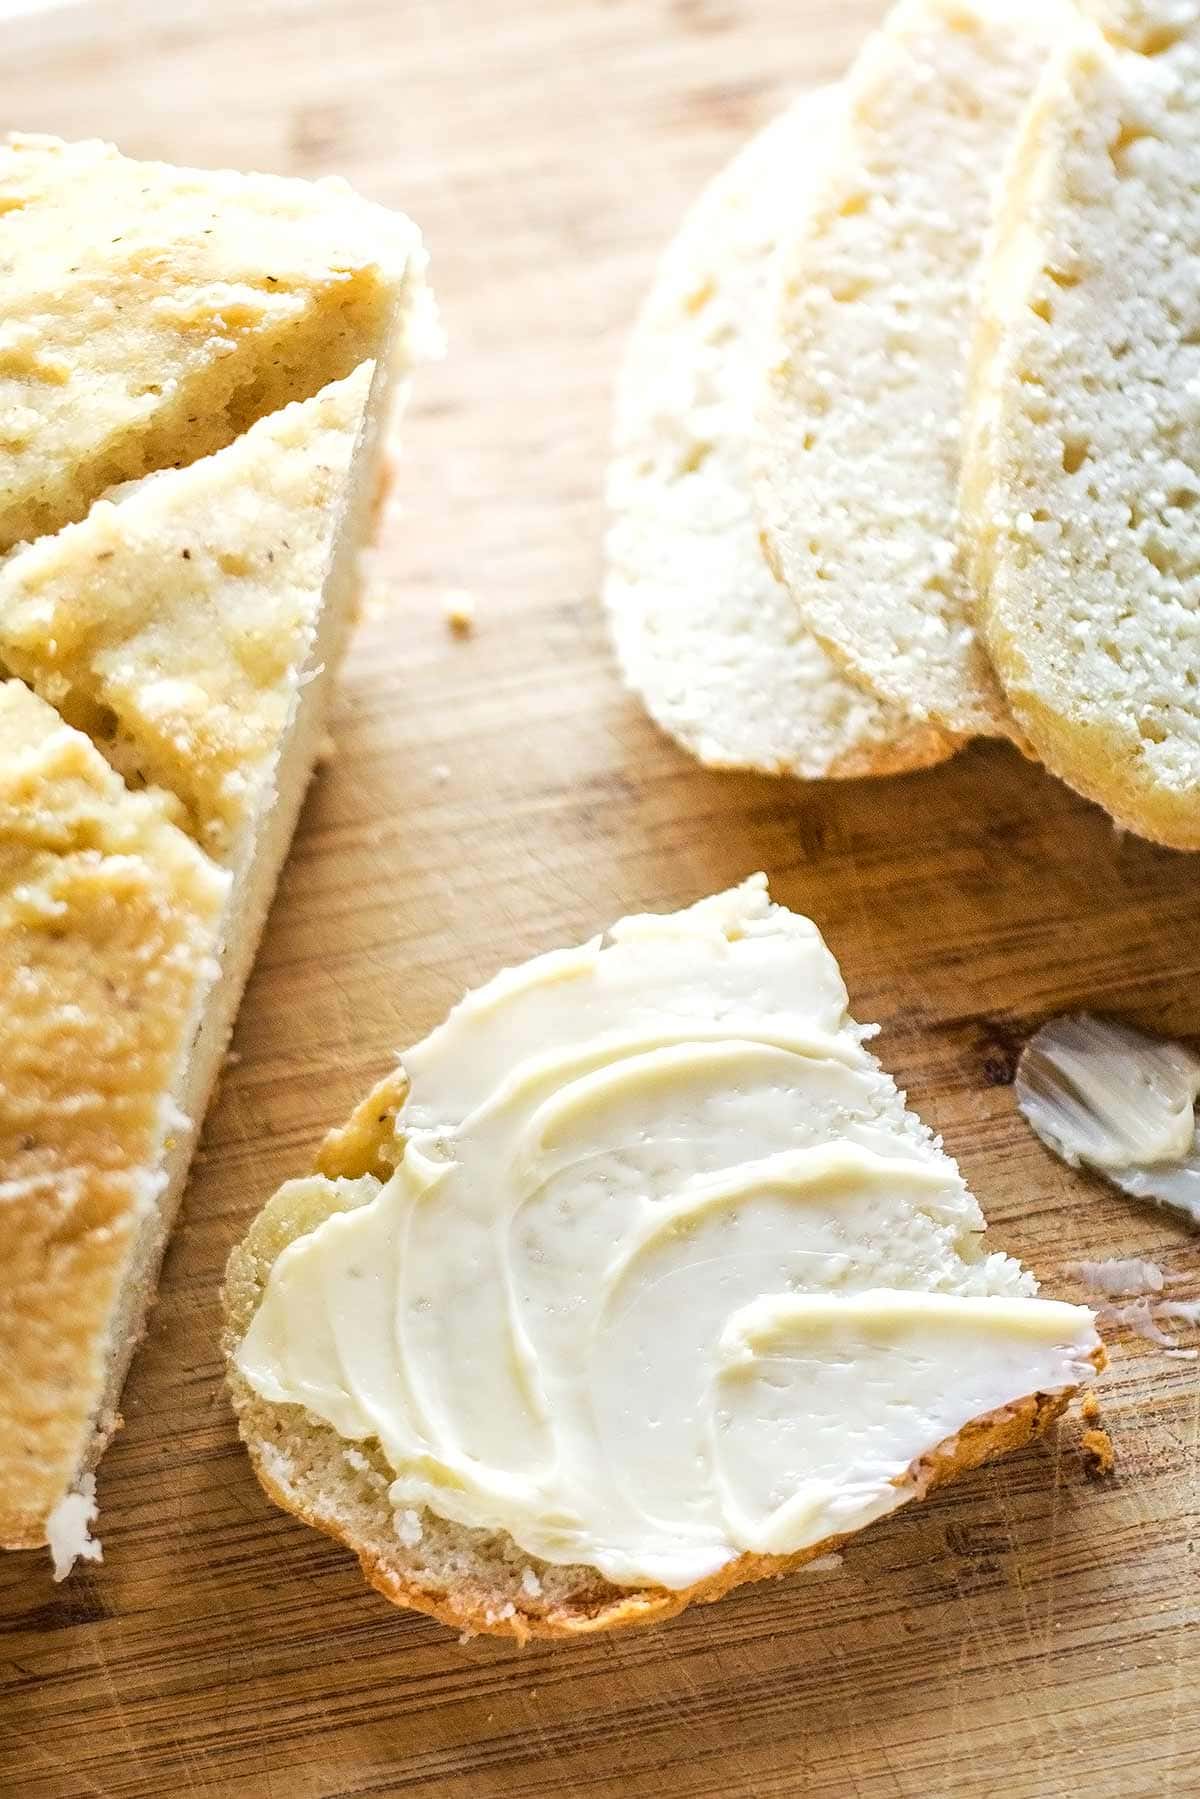 Best gluten free sourdough bread slice with butter spread on top